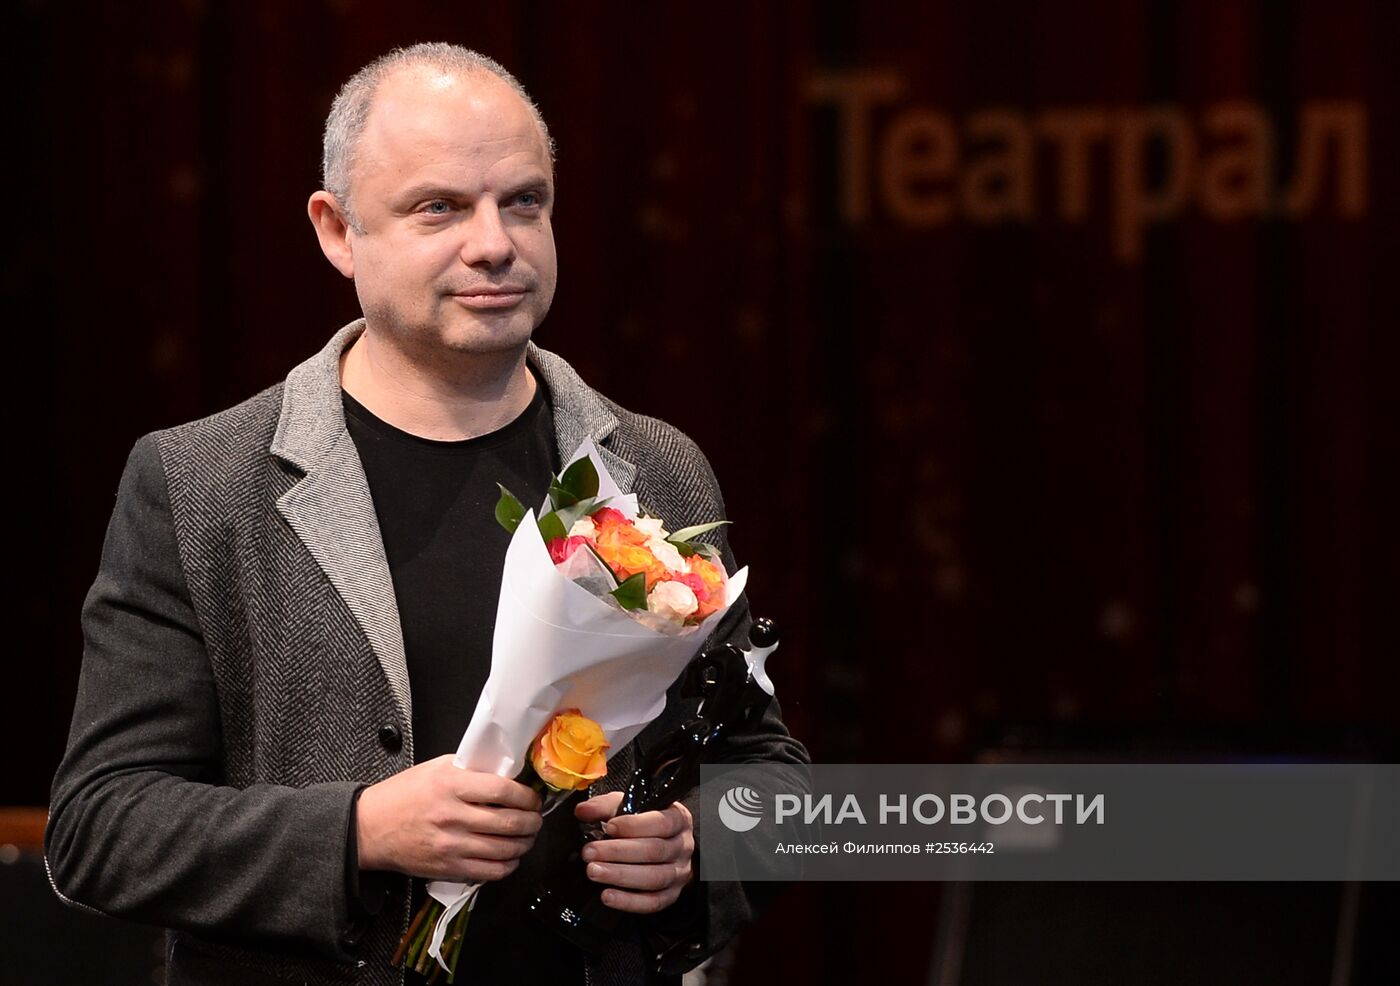 Вручение премии зрительских симпатий "Звезда театрала"